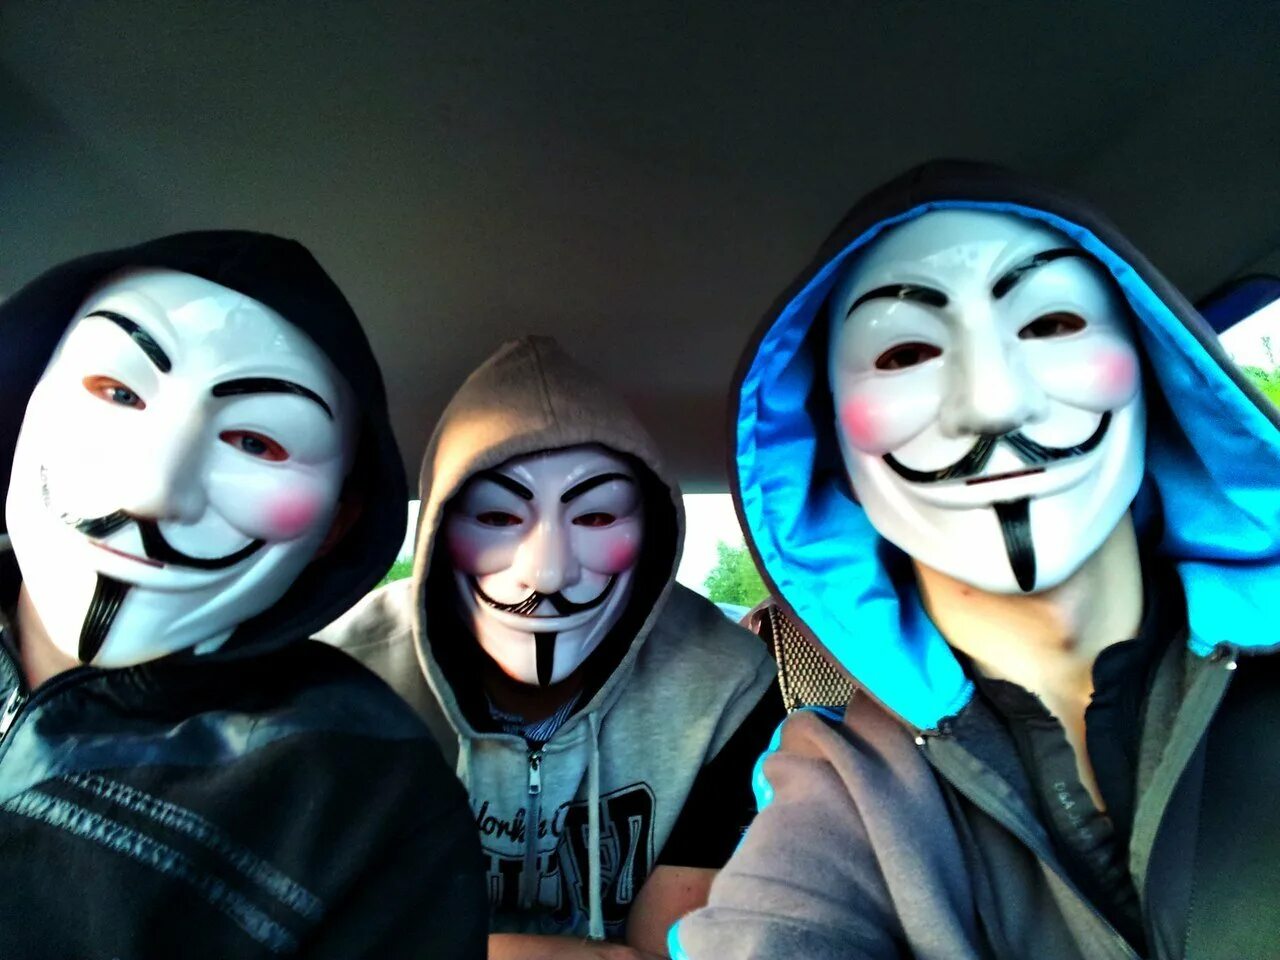 Крутые пацаны 3. Гай Фокс анонимус. Маска Гая Фокса (Анонимуса). Анонимус человек в маске Гая Фокса. Парень в маске Анонимуса.